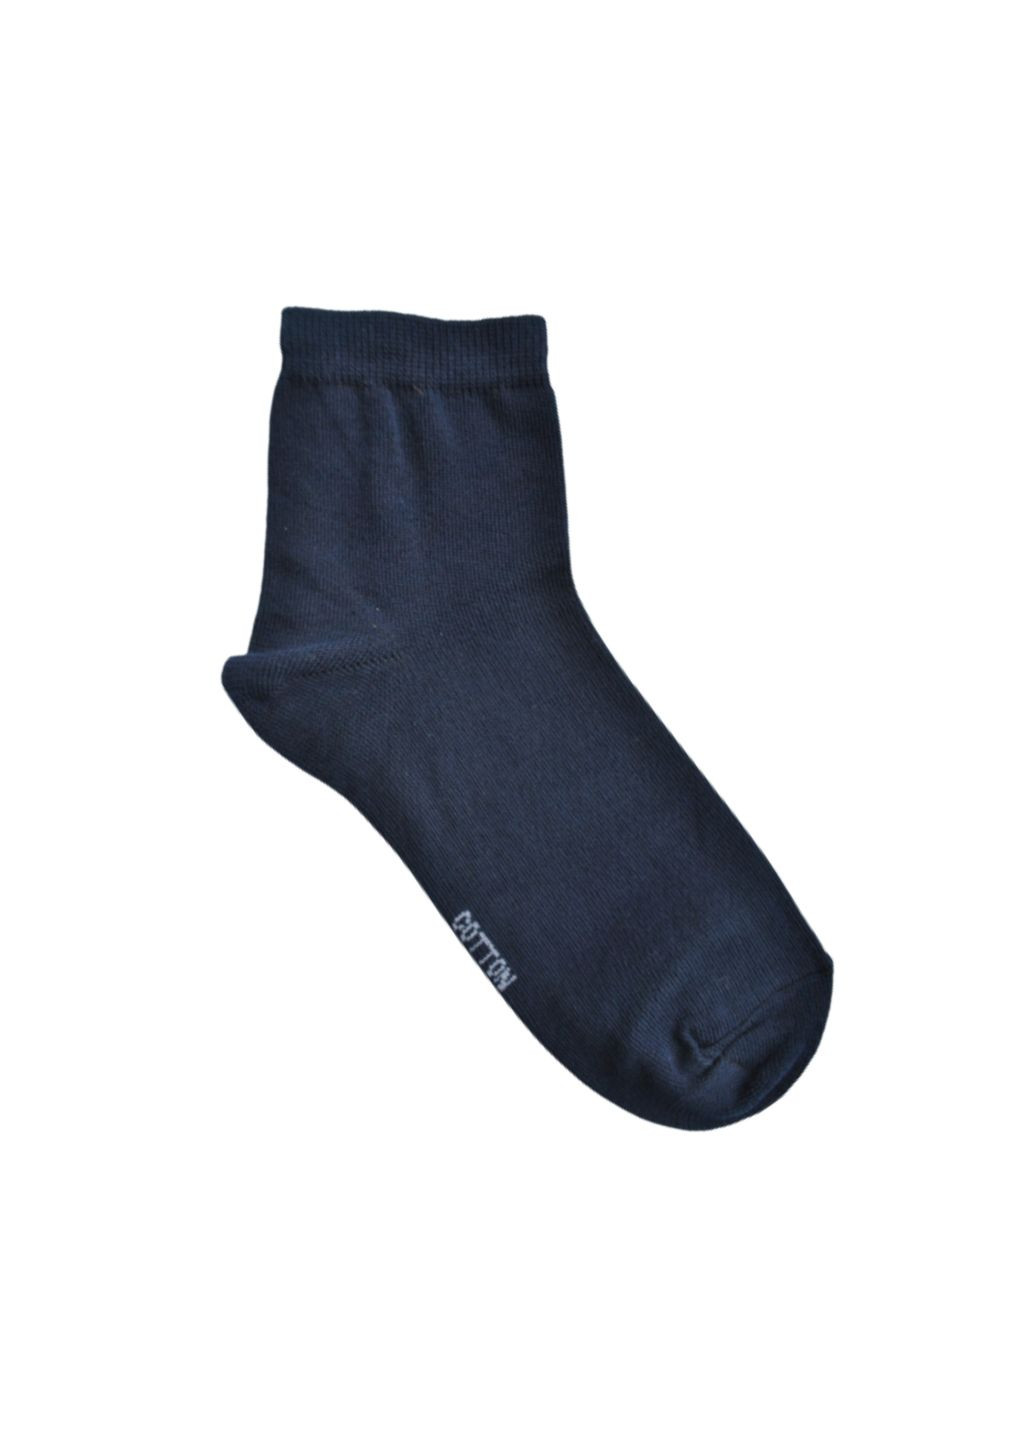 RFT Шкарпетки чол. сер. демі/RT1311-003/39-42/темно-синій. Набір (3 шт.) MZ rt1311-003_набори (260063177)